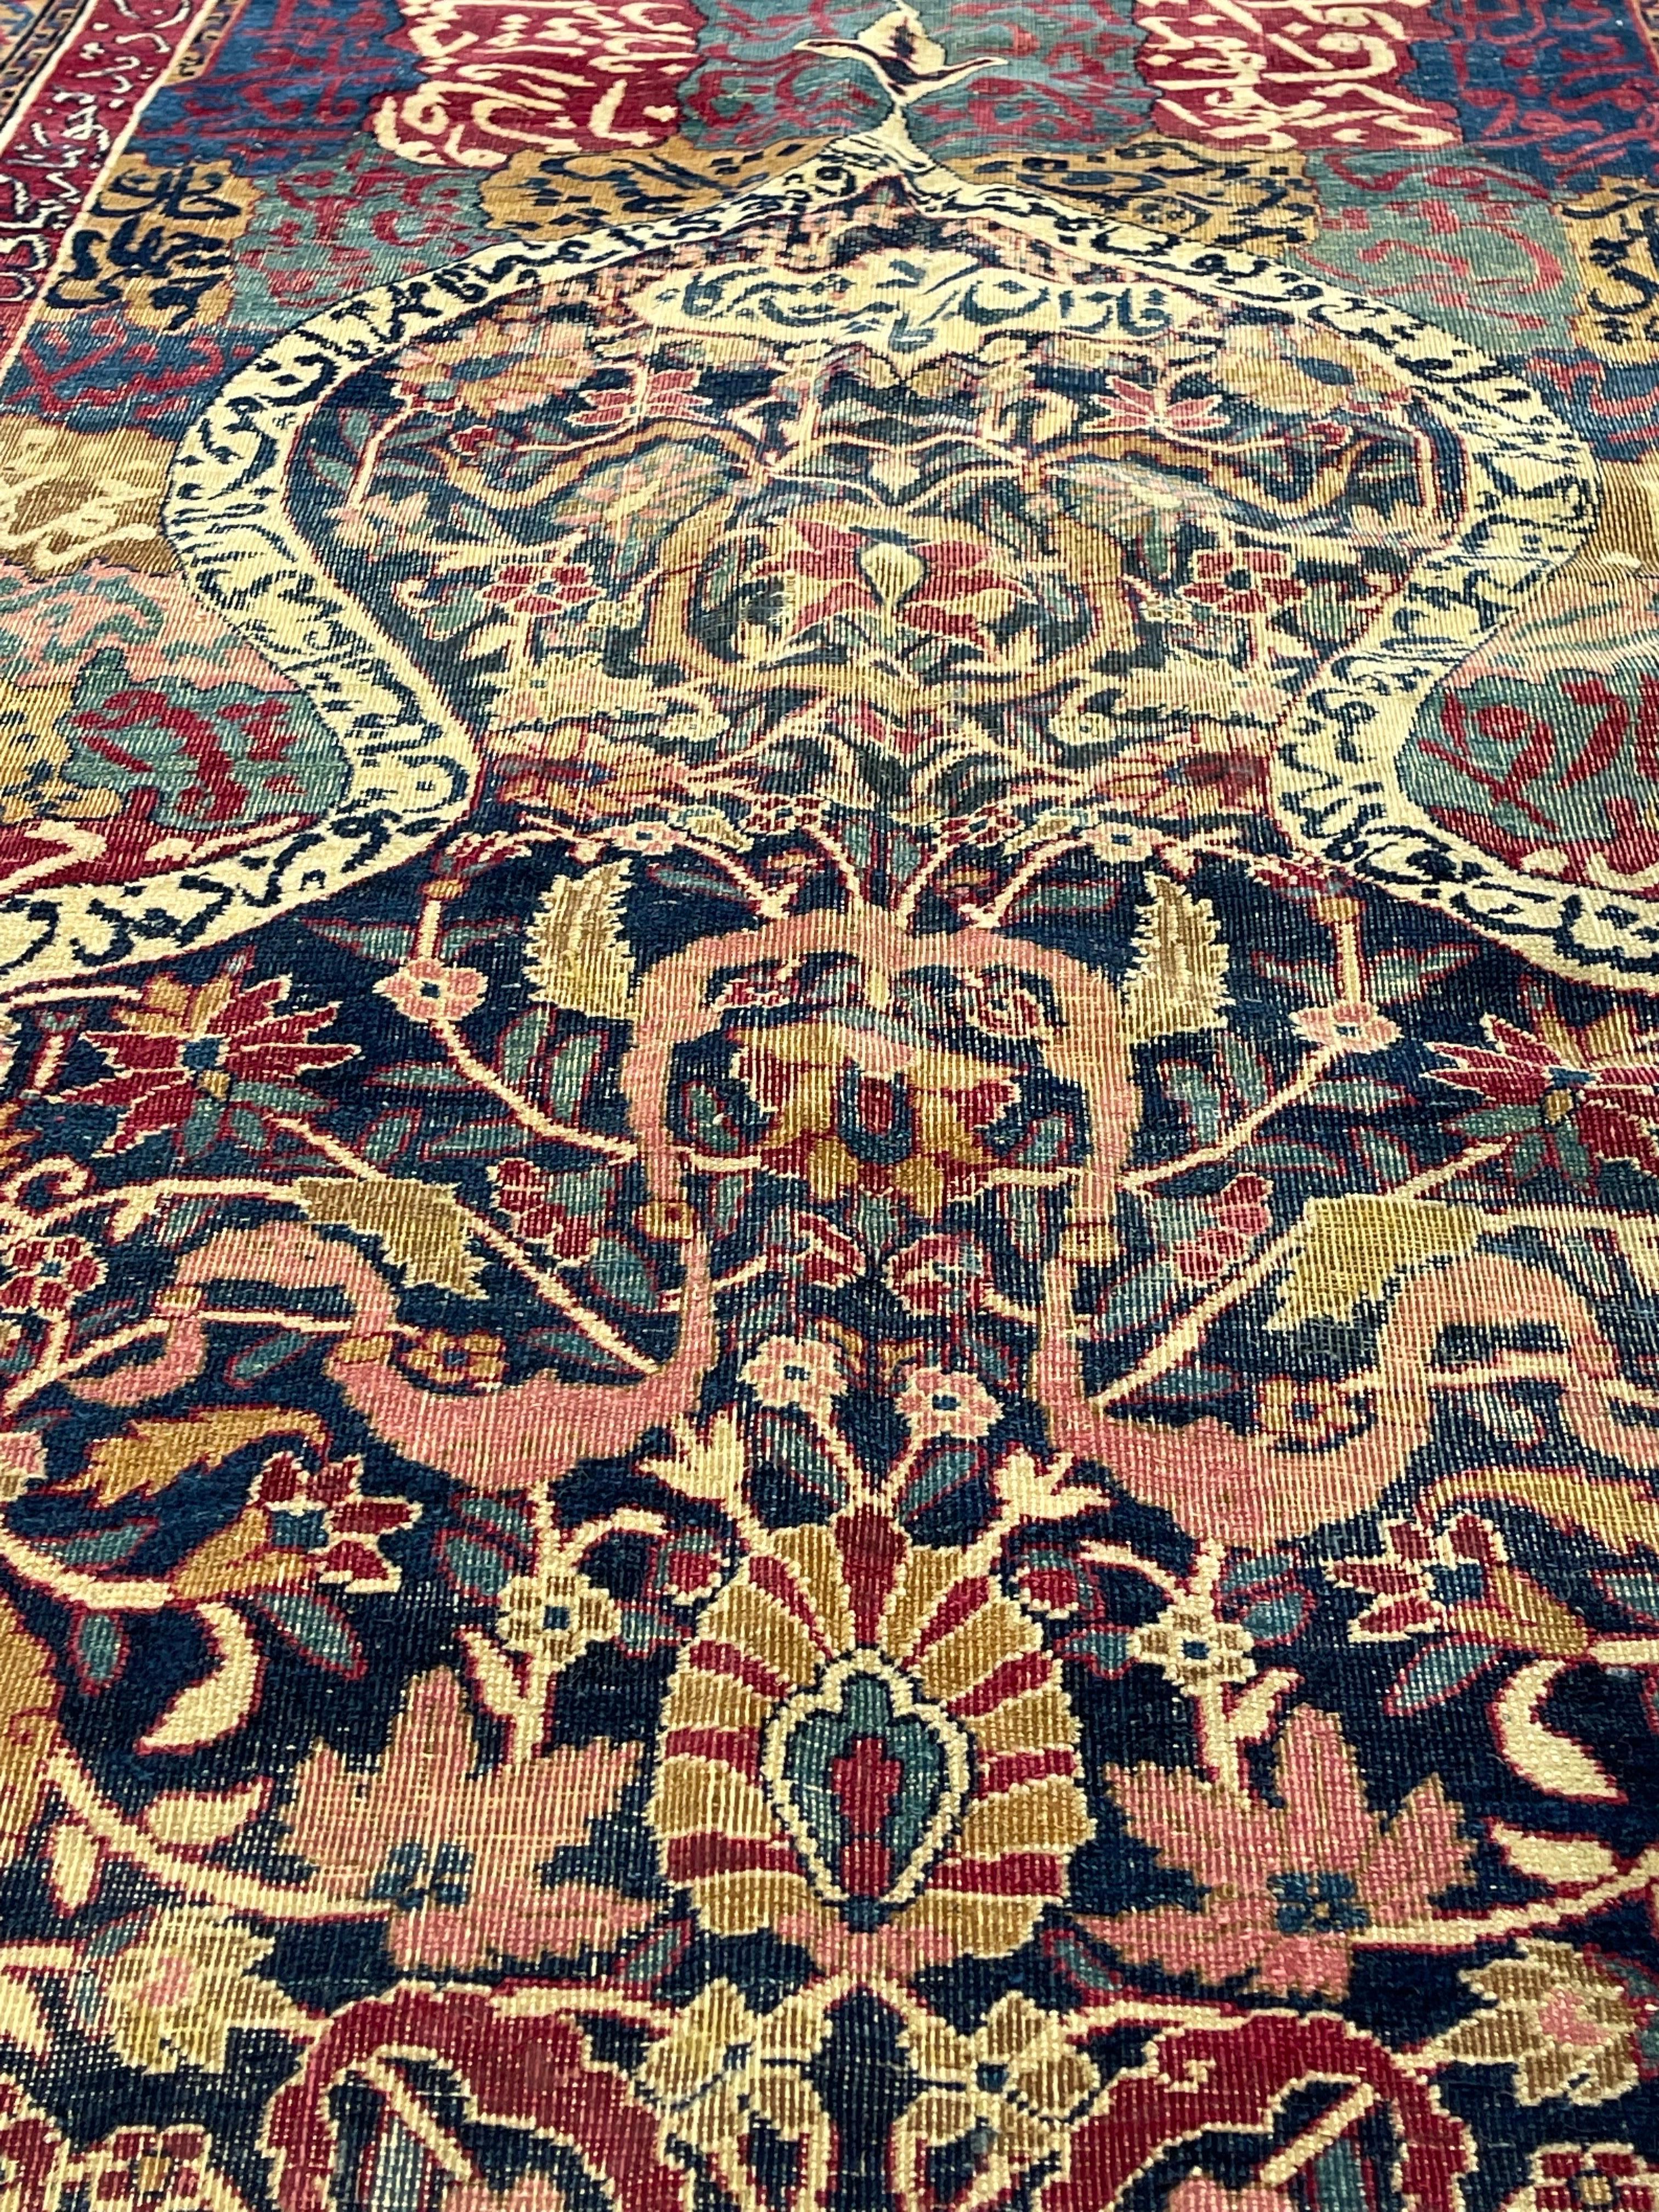 L'origine turque de ce tapis reste incontestée. Cet exemple magnifique s'inspire du mysticisme islamique le plus pur du Mihrab. Au sommet du Mihrab, en forme d'arc de mosqué, est suspendu l'aiguière traditionnelle remplie de carnations et son design